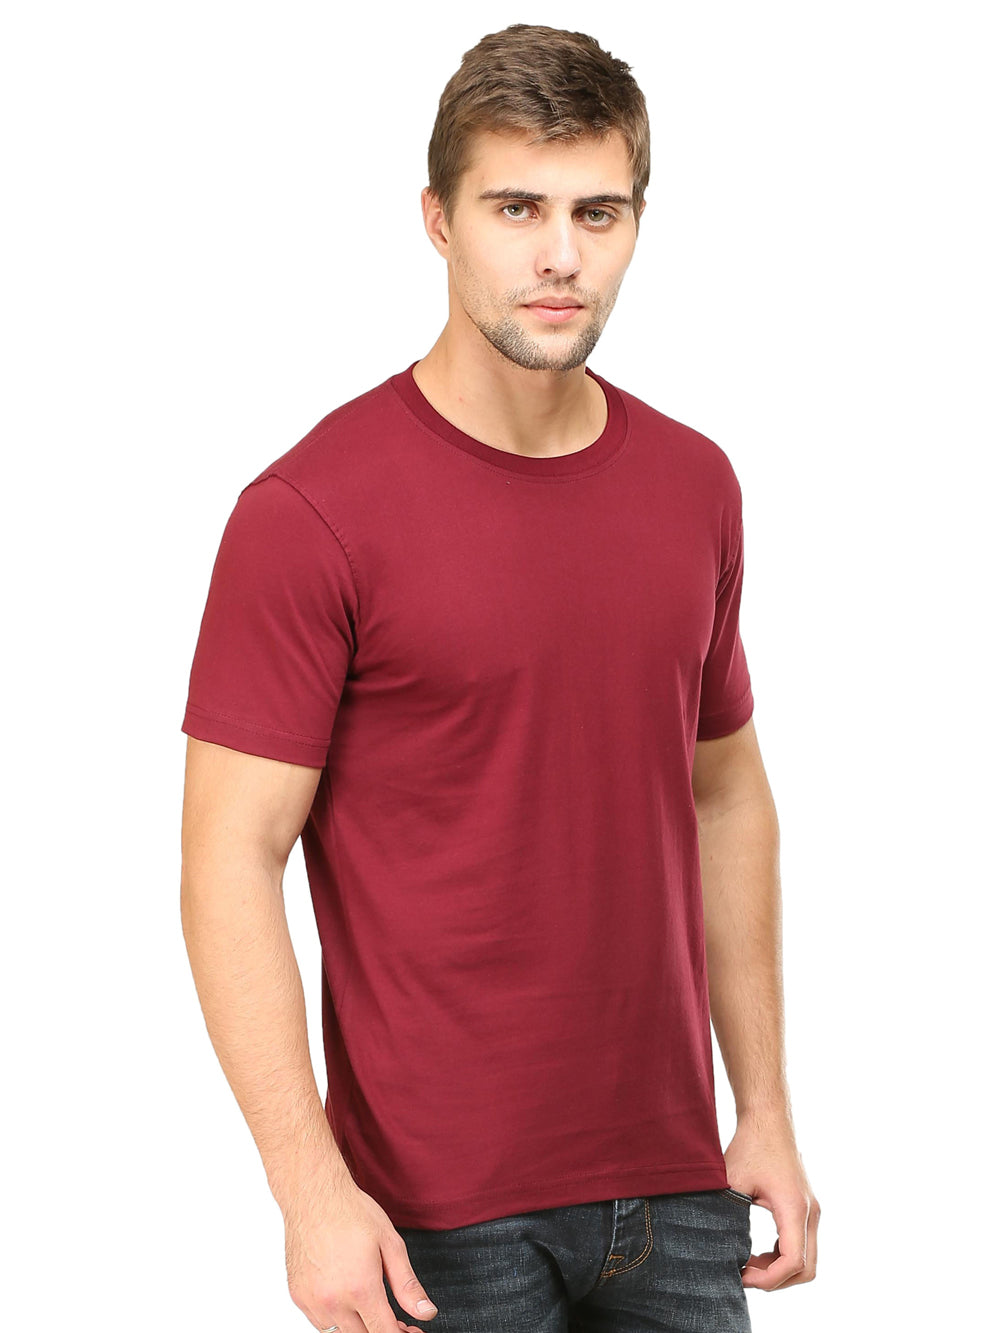 Solids : Premium Maroon  Unisex T -shirt